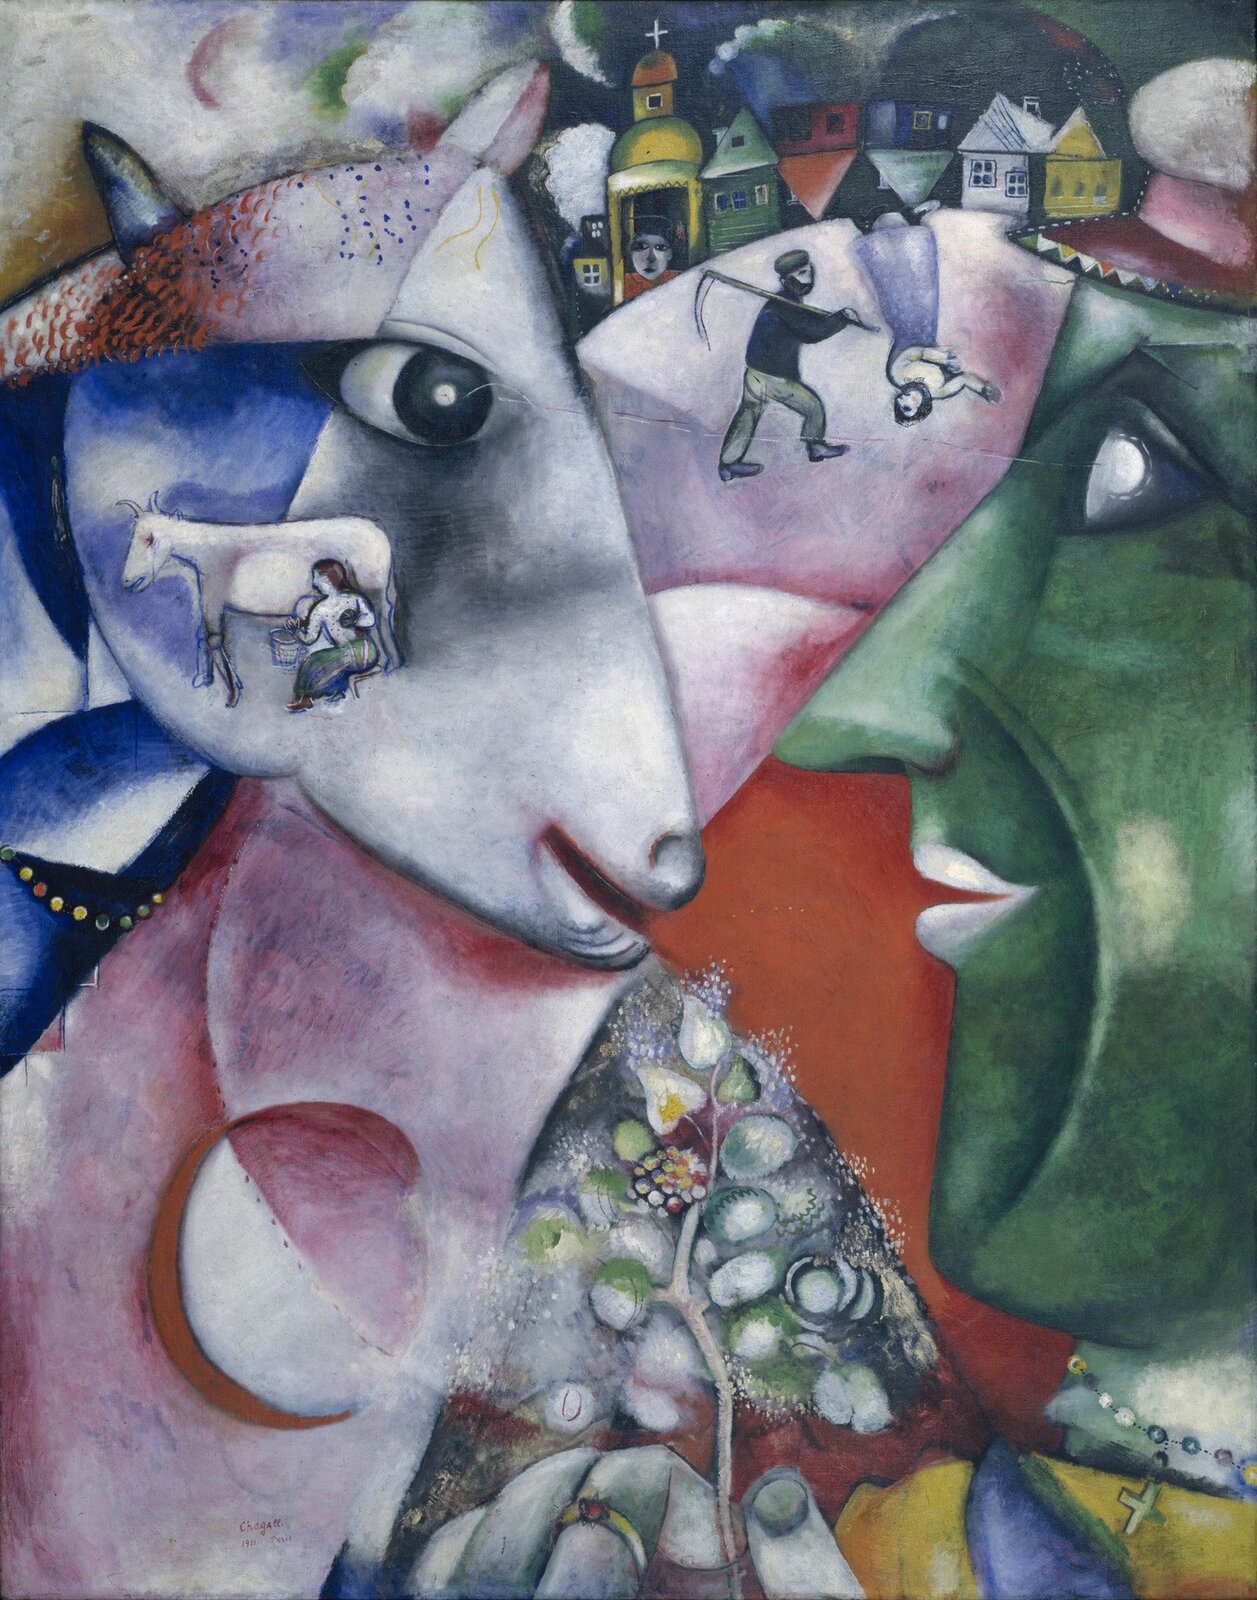 Ilustracja przedstawia obraz Marca Chagalla pt. „Ja i wieś”. Na obrazie znajdują się duża głowy zwierzęcia oraz mężczyzny. Na ich tle znajdują się budynki oraz inne postacie.